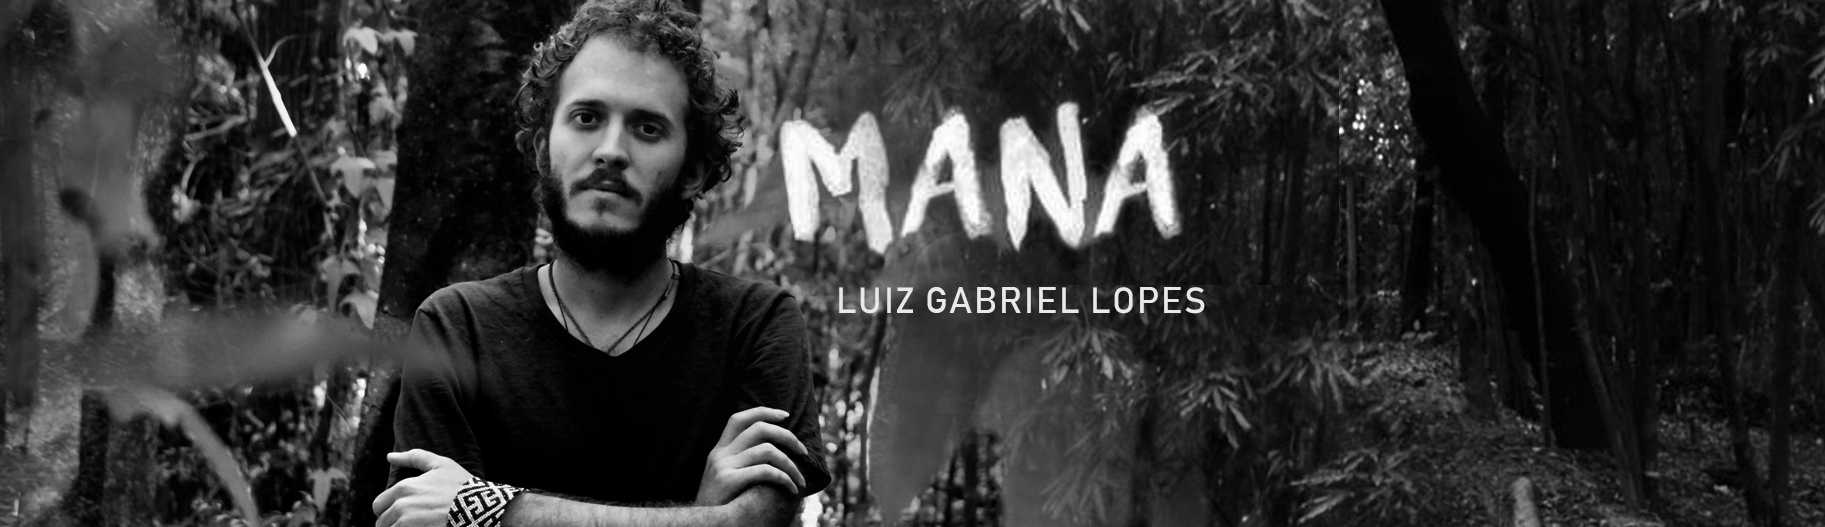 Luiz Gabriel Lopes, em “Mana”, abre o compasso sobre a diversidade